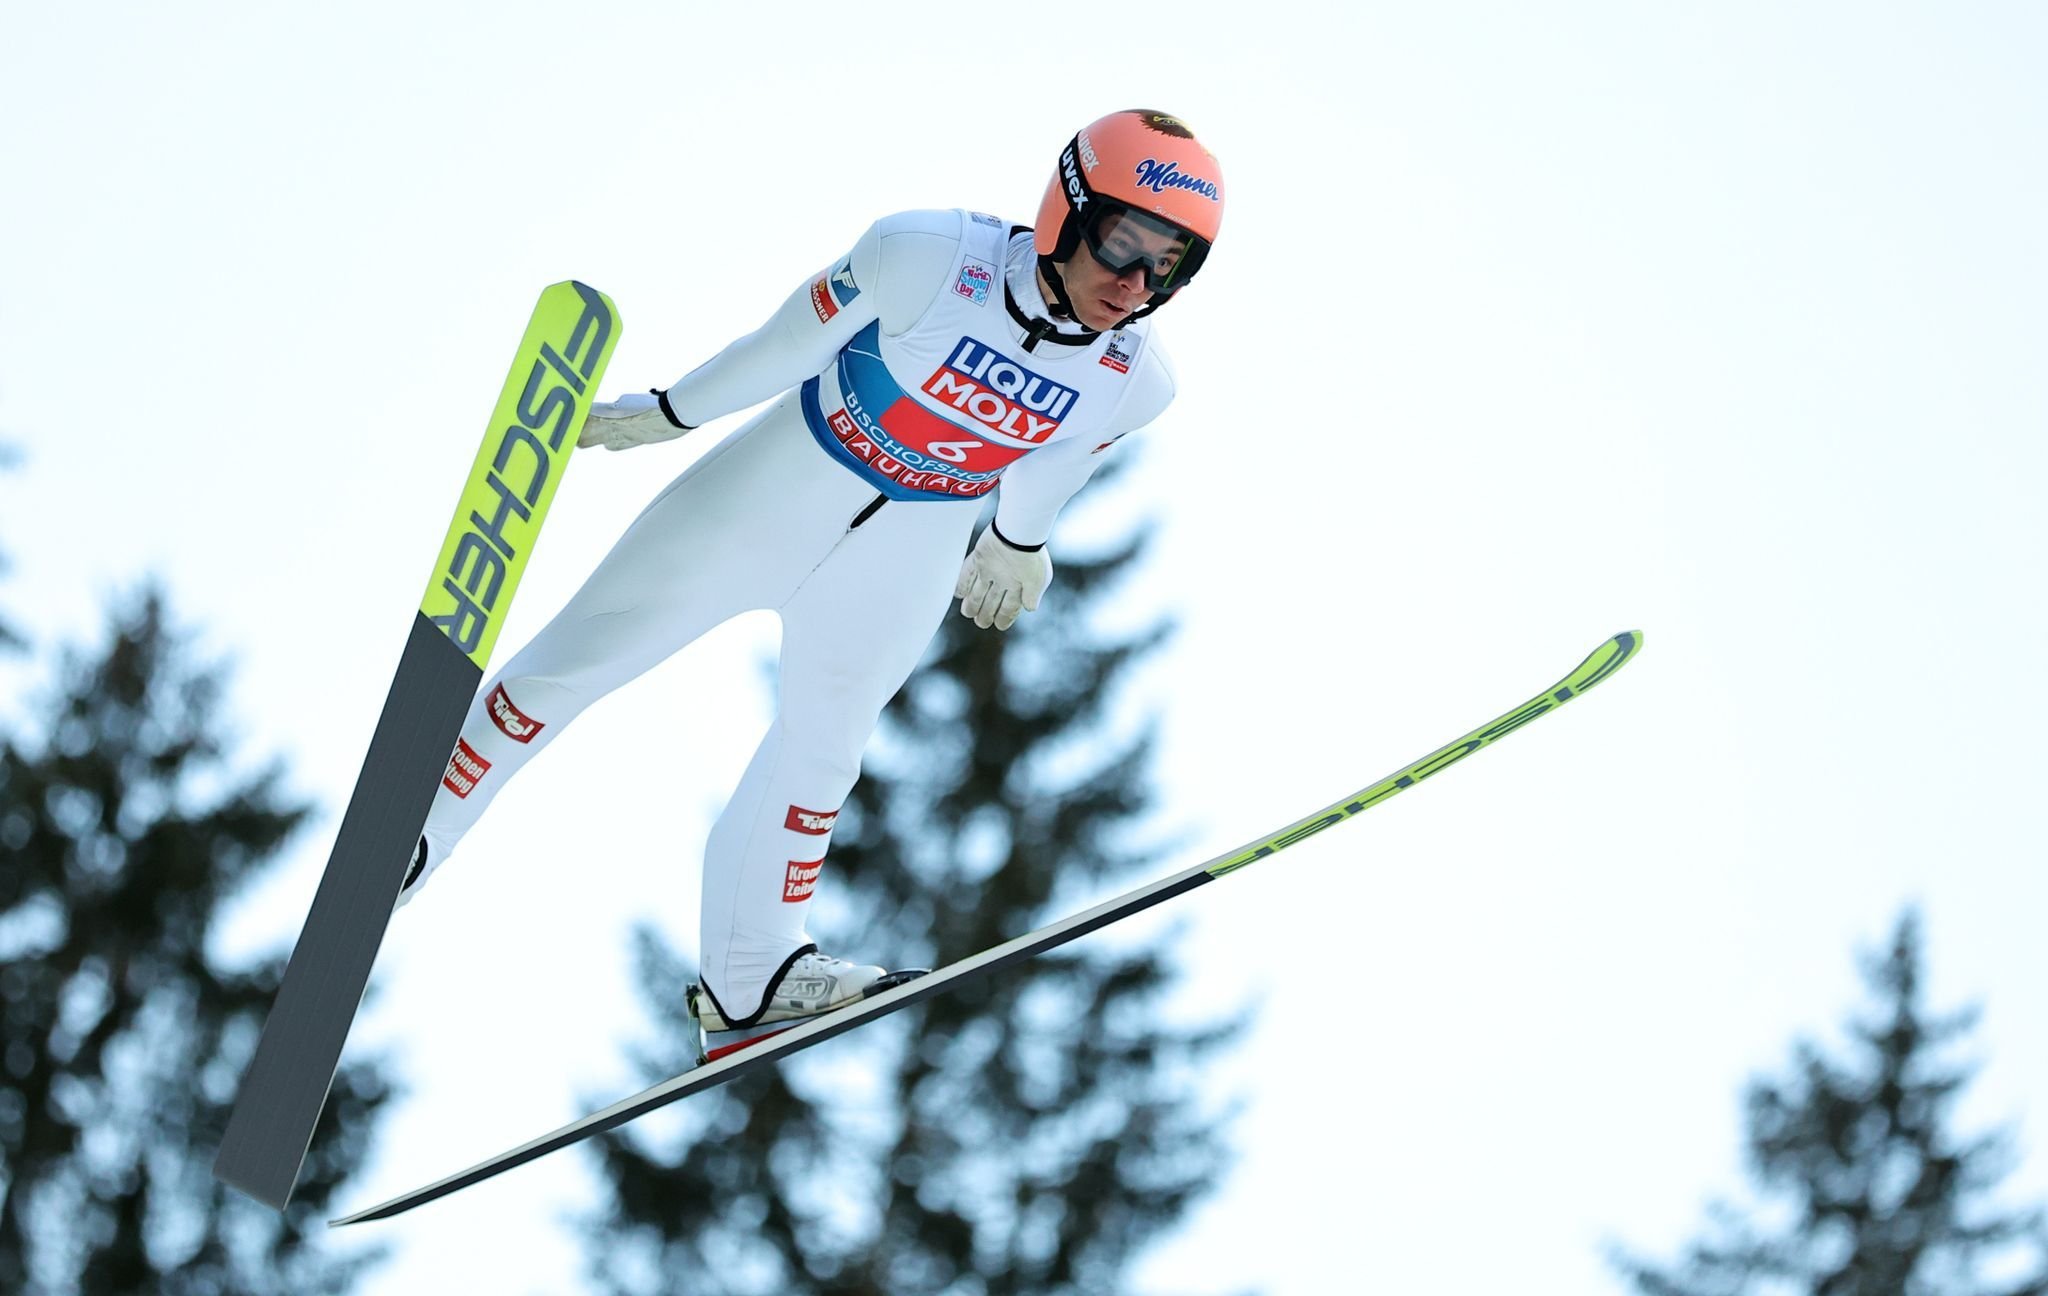 Skispringer in Planica chancenlos — Kraft überragt